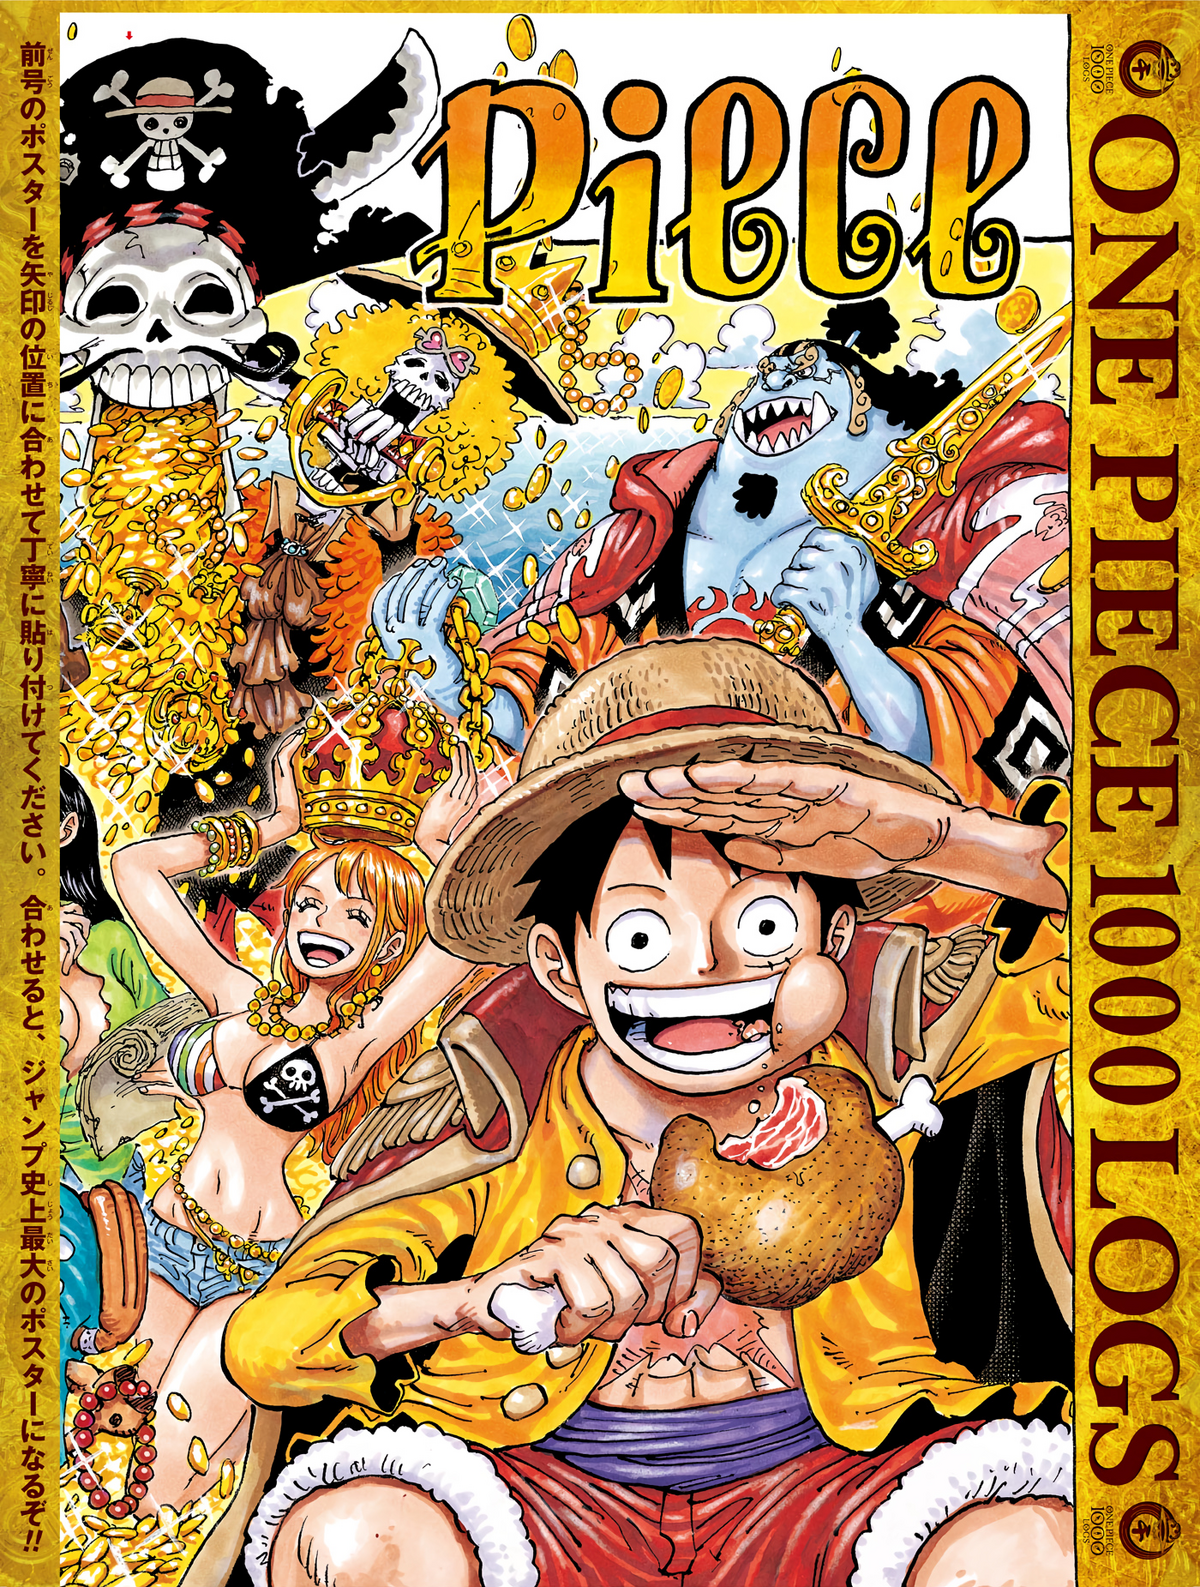 Monkey D Luffy 1015  One piece episodes, Manga anime one piece, One piece  anime